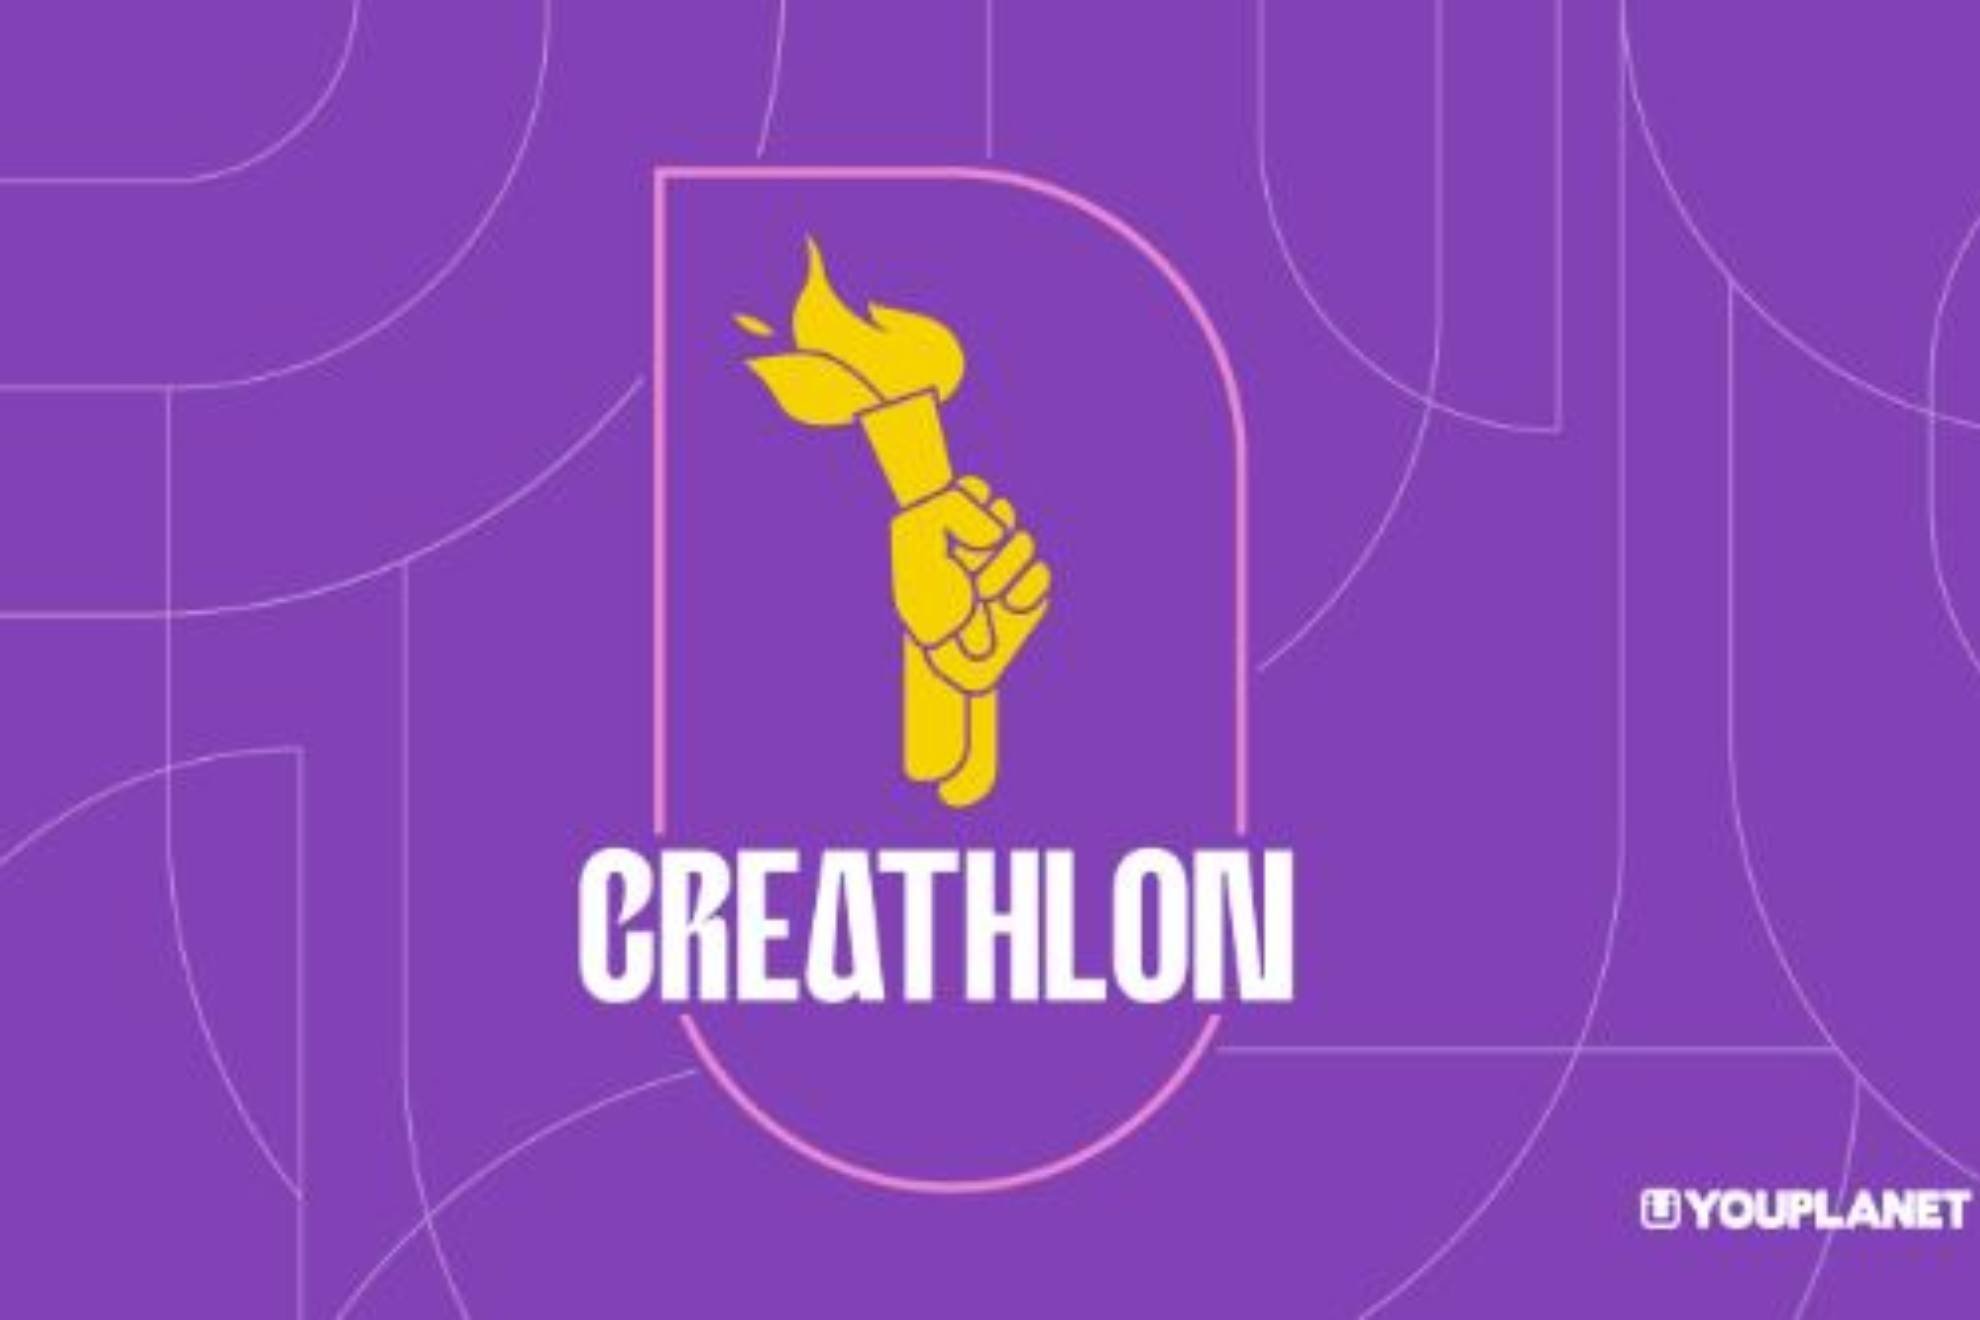 Llega el Creathlon, las Olimpiadas de los creadores de contenido